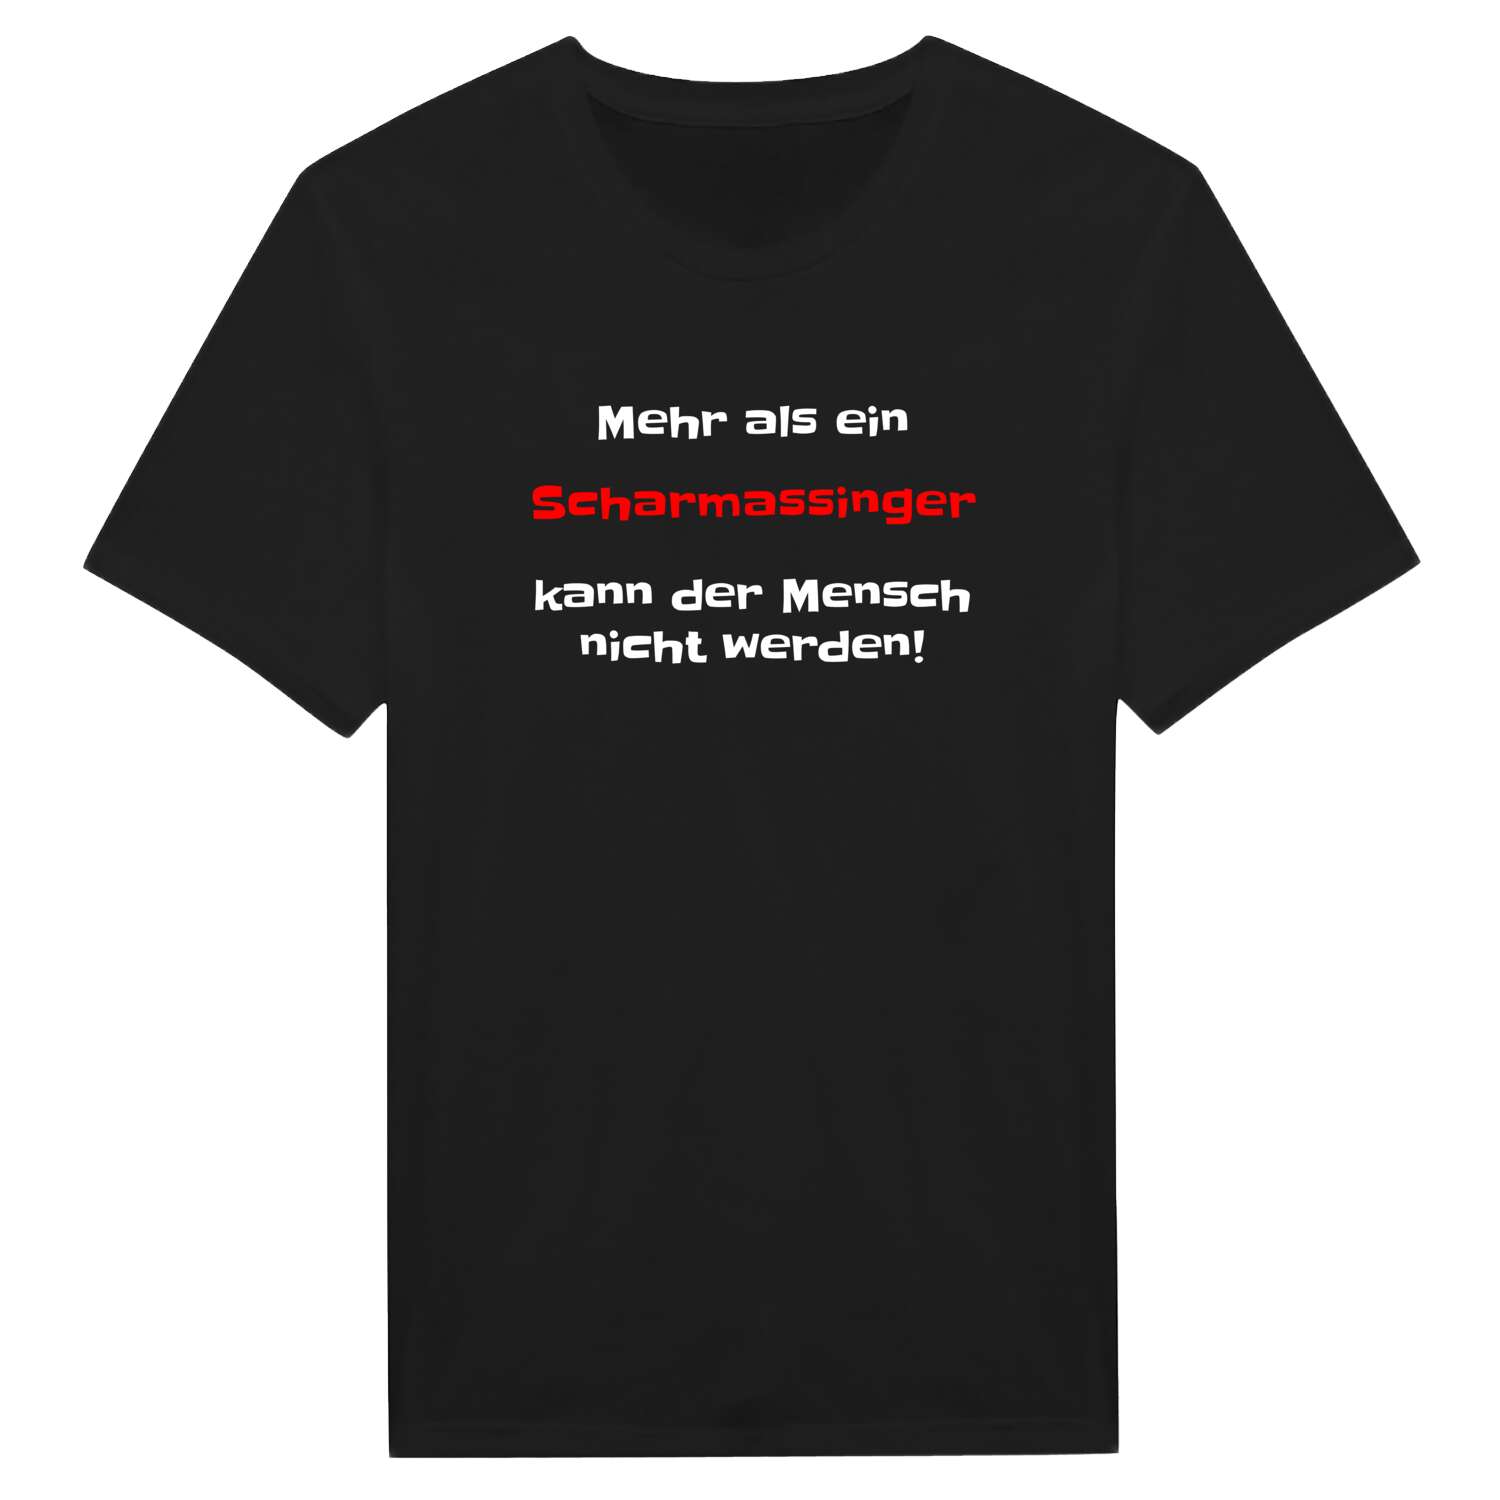 Scharmassing T-Shirt »Mehr als ein«